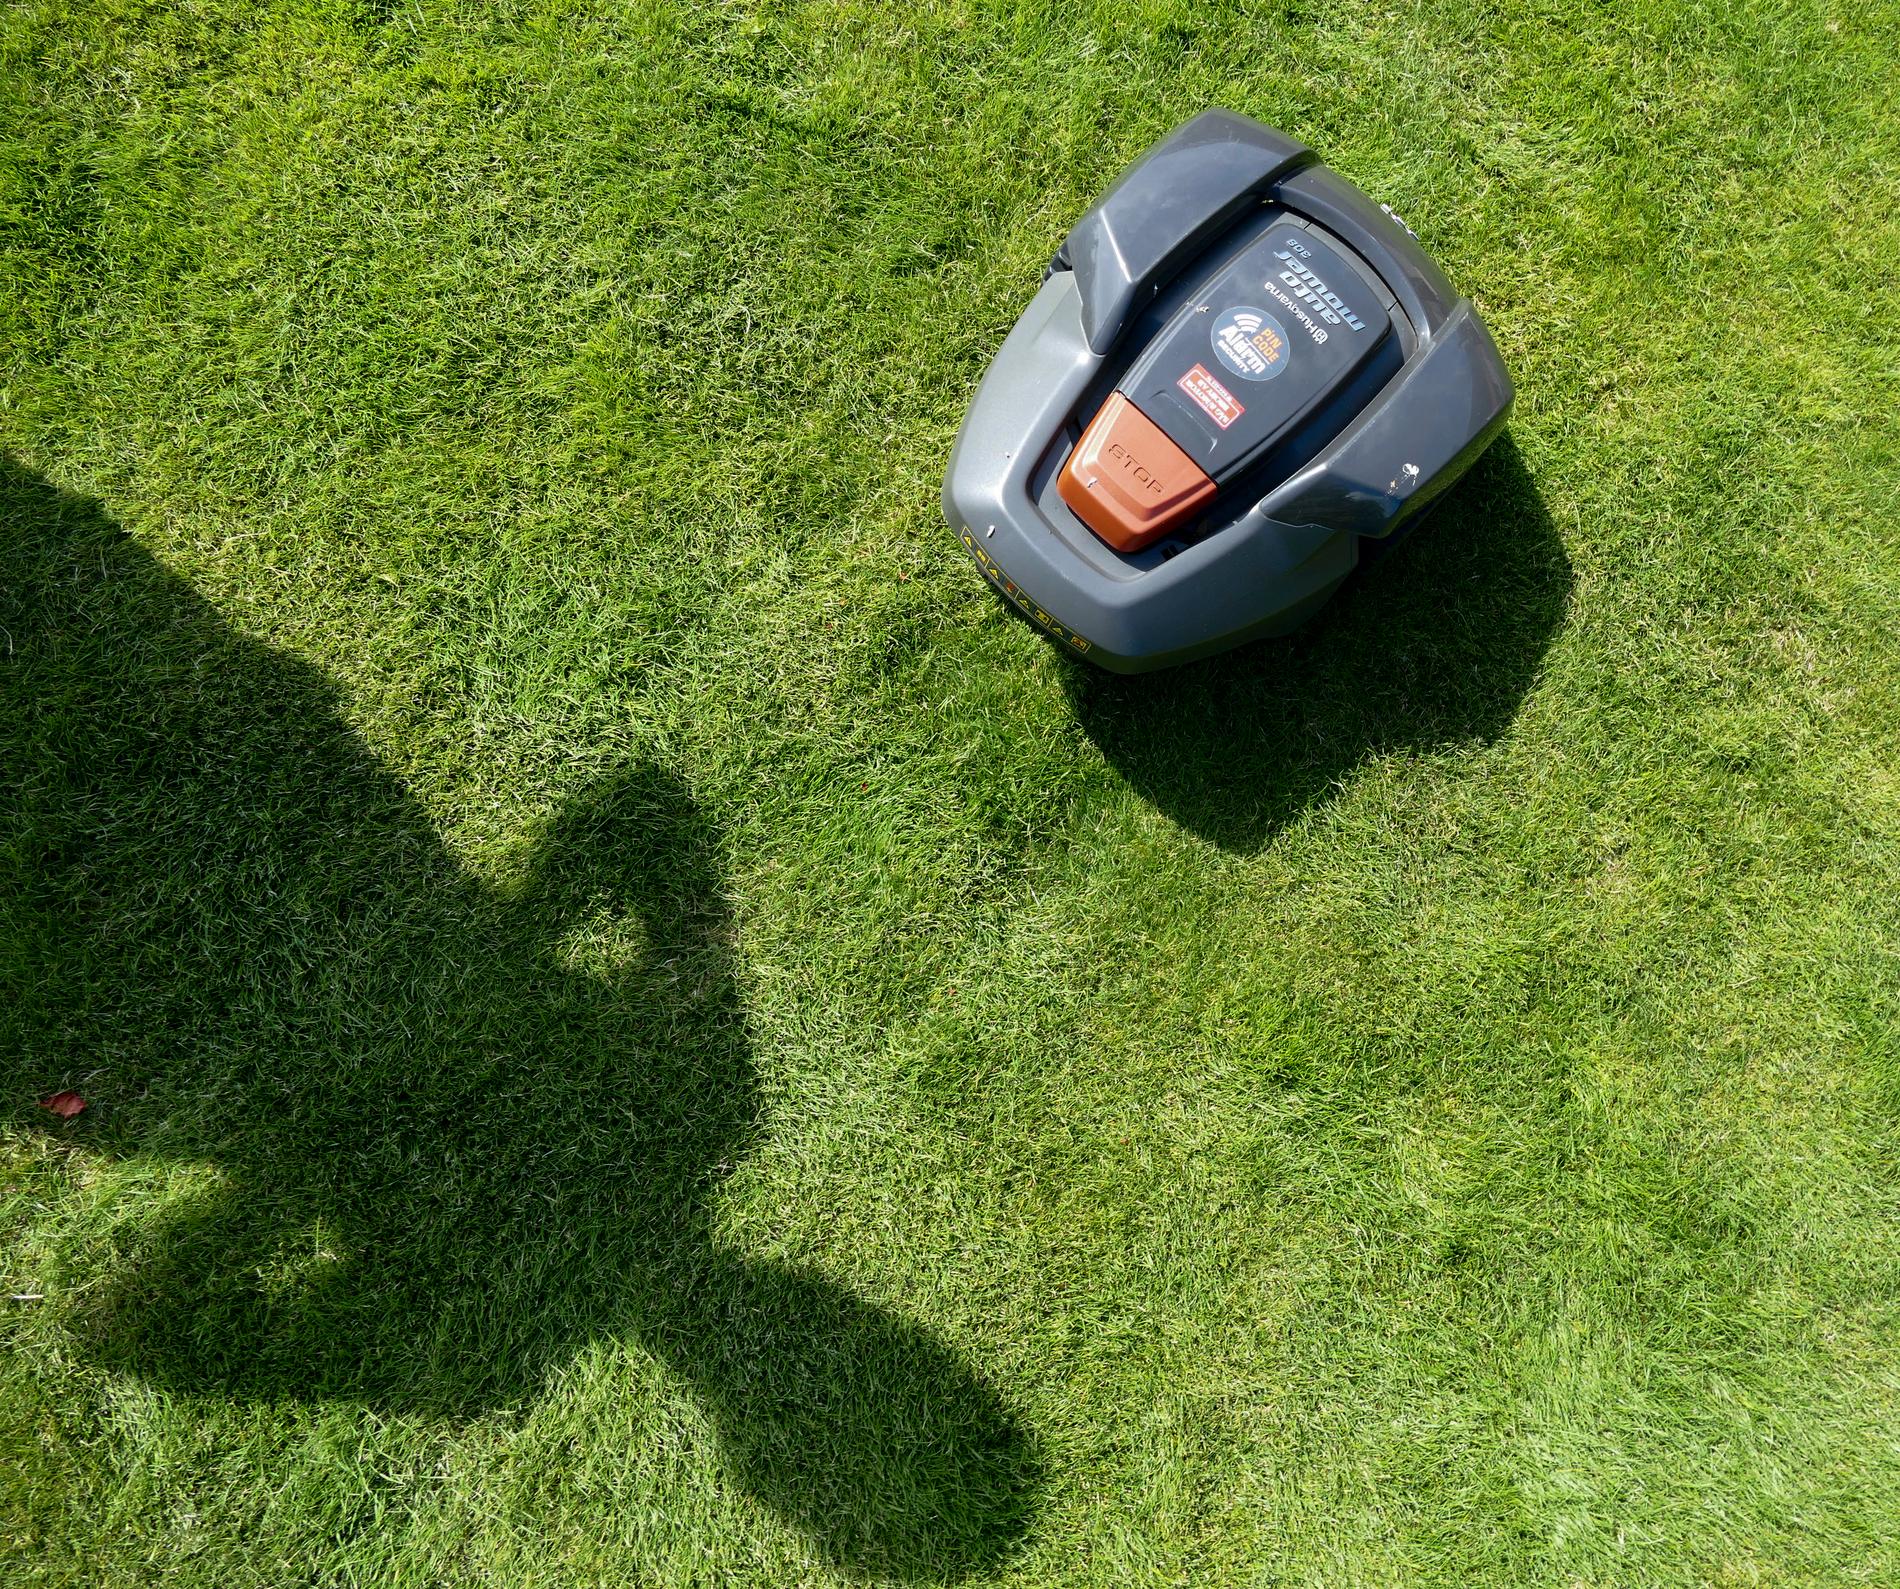 Robotgräsklippare i arbete på en gräsmatta.